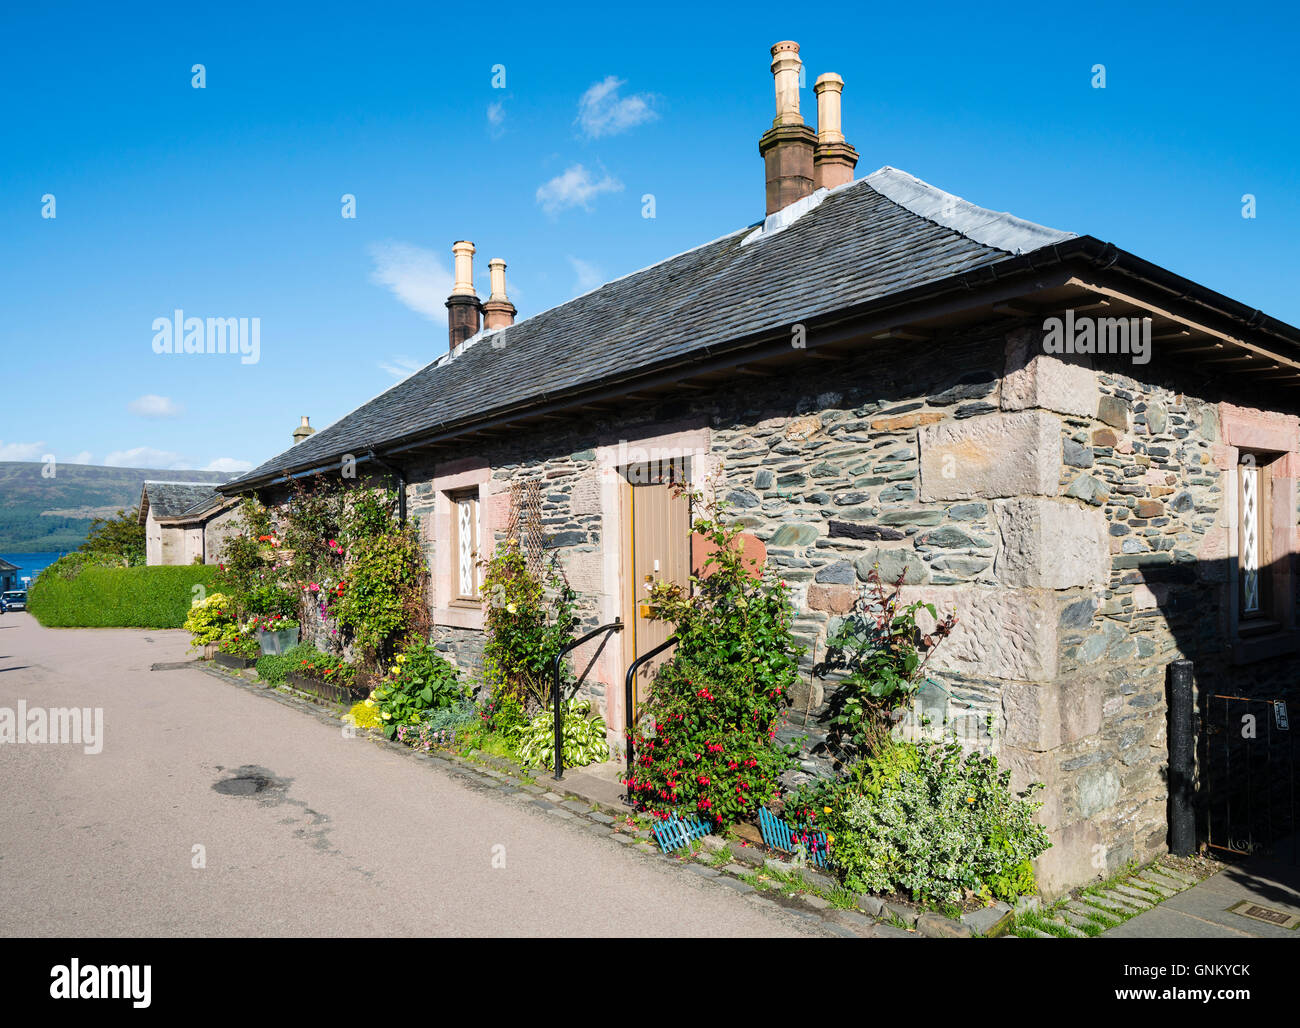 Vieux traditionnels cottages dans village historique de Luss sur les rives du Loch Lomond, à Argyll and Bute, Ecosse, Royaume-Uni Banque D'Images